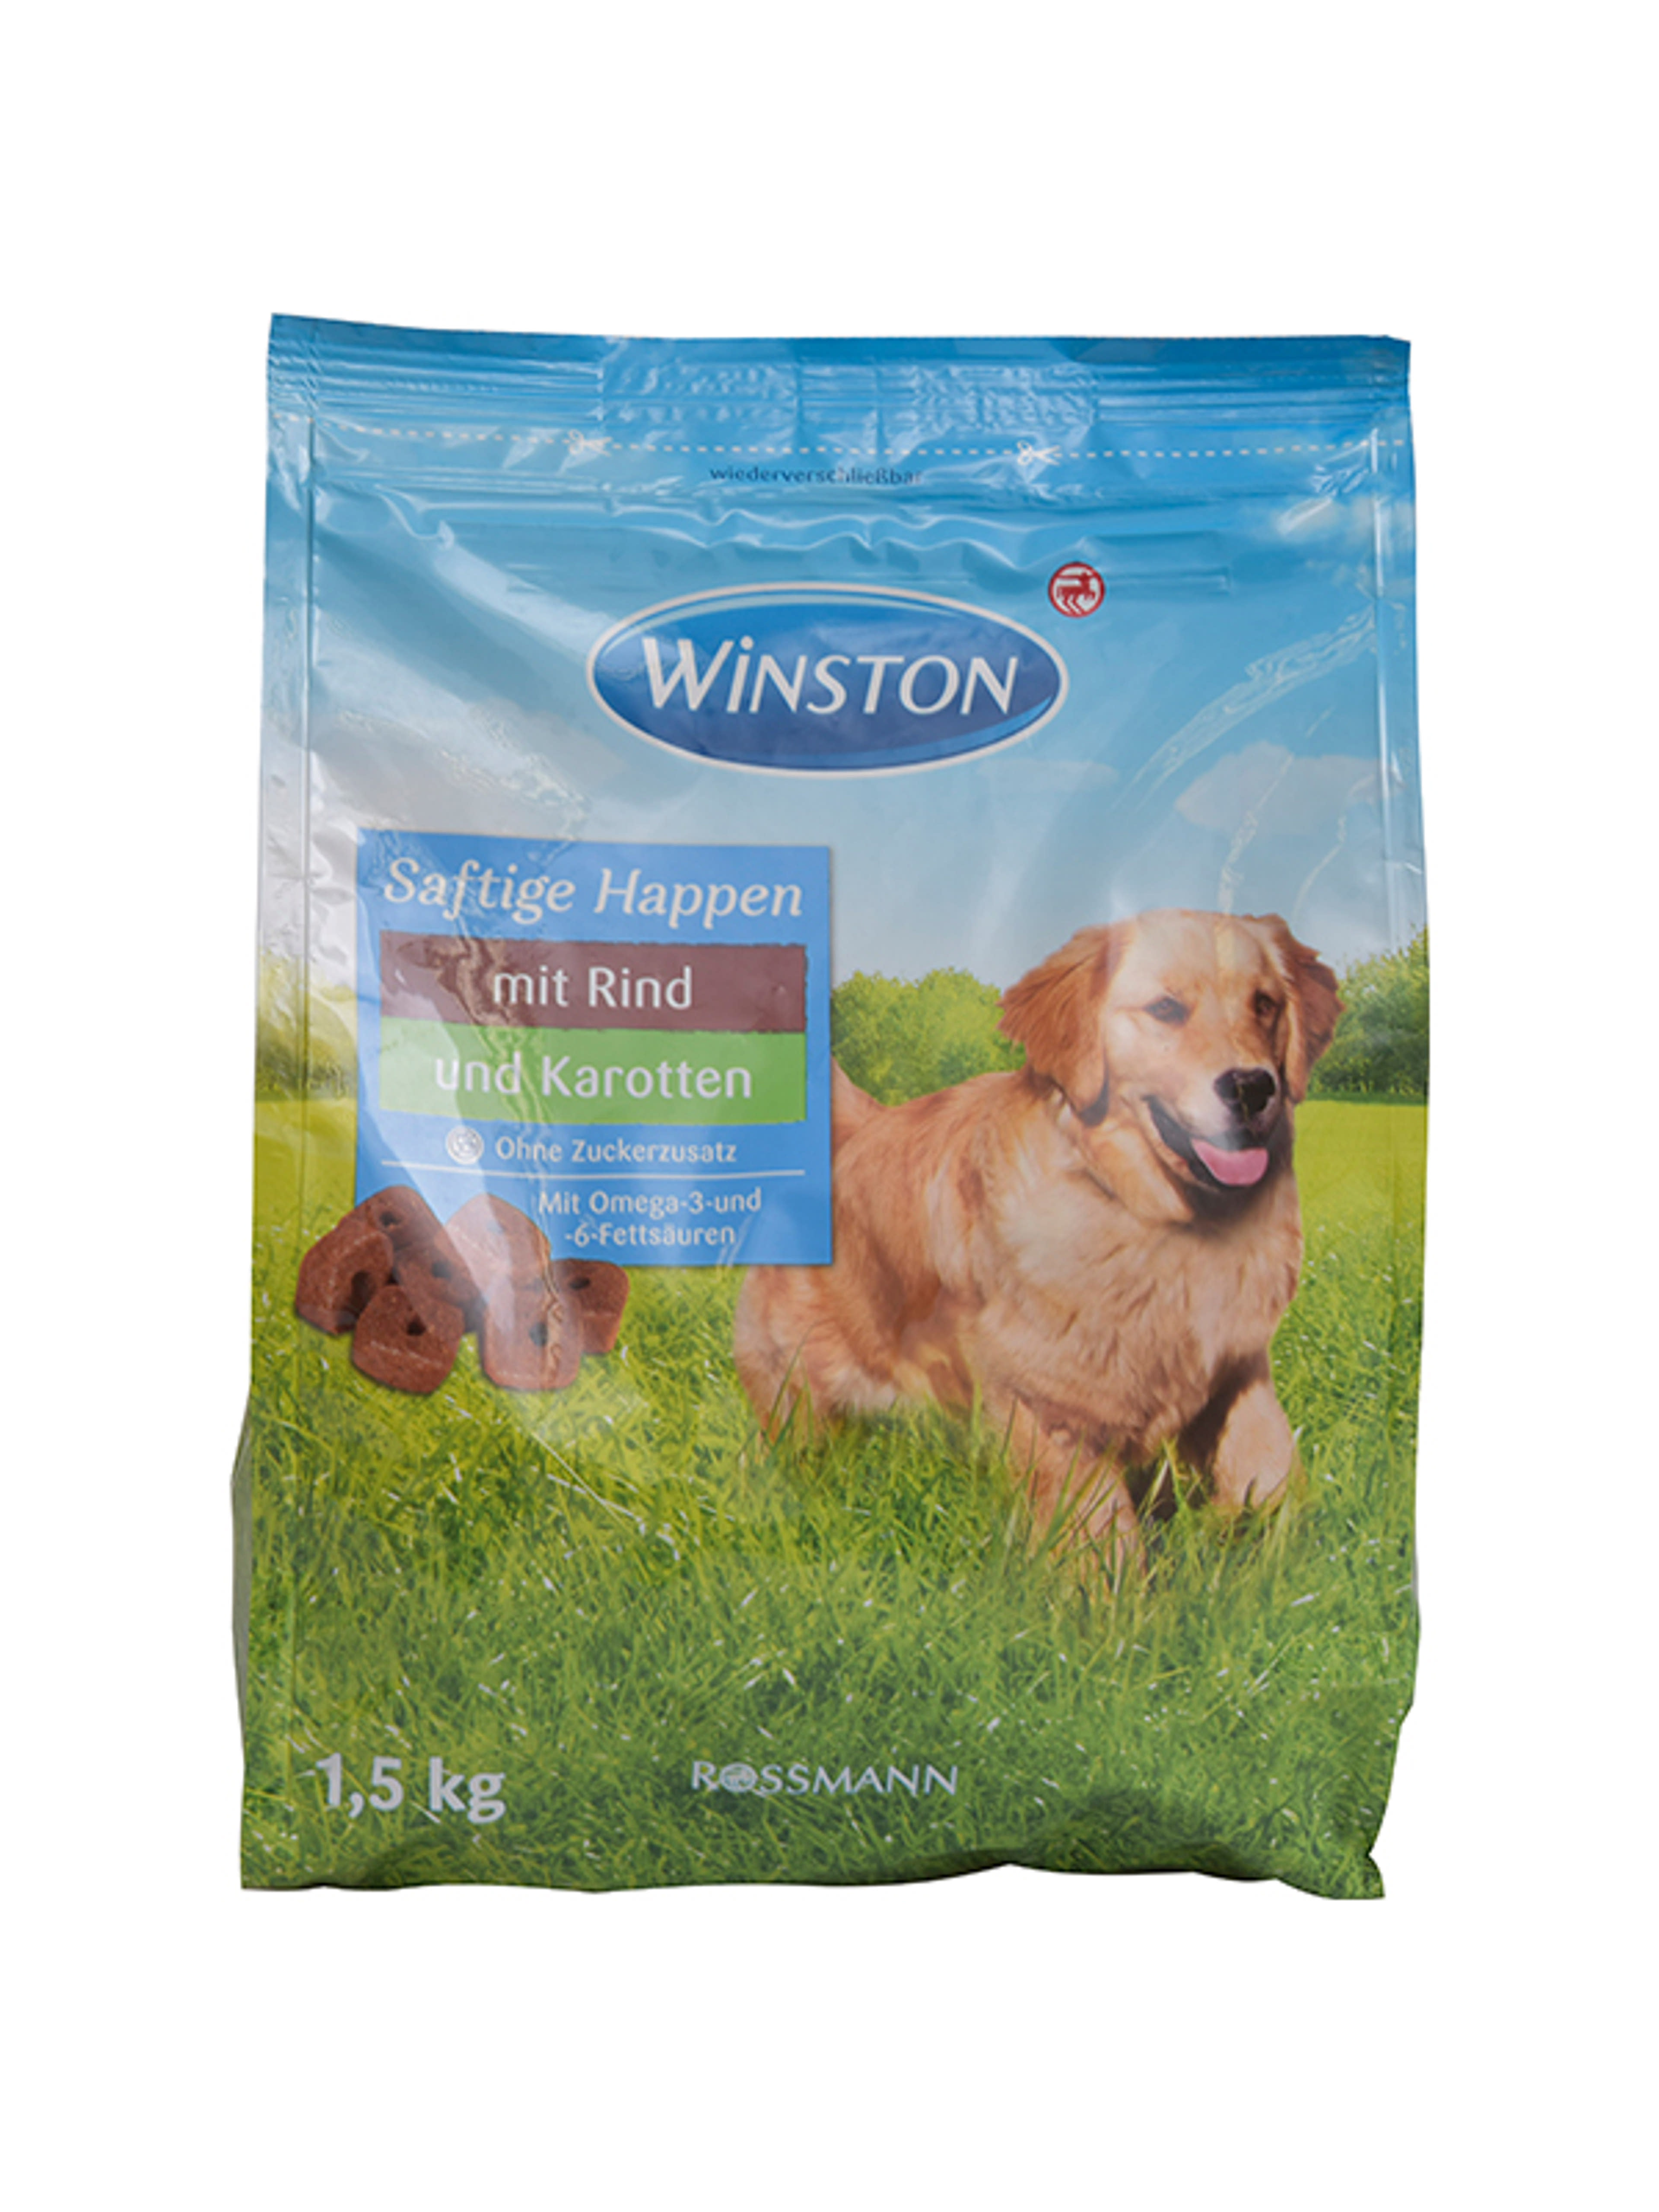 Winston szárazeledel kutyáknak, szaftos falatok - 1,5 kg